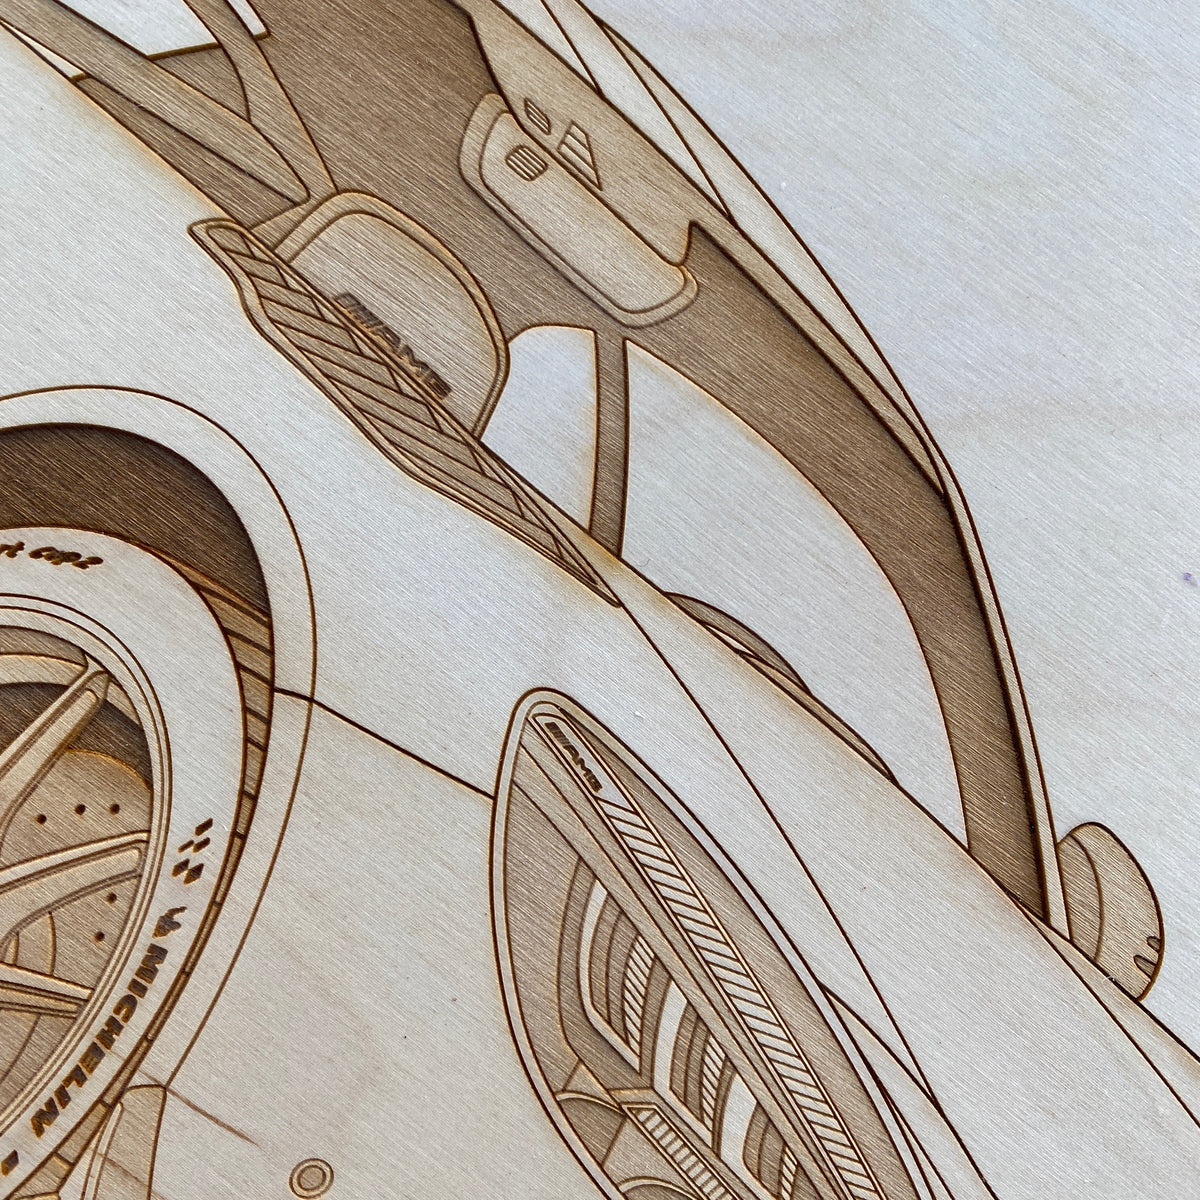 AMG GT R Pro Framed Wood Engraved Artwork